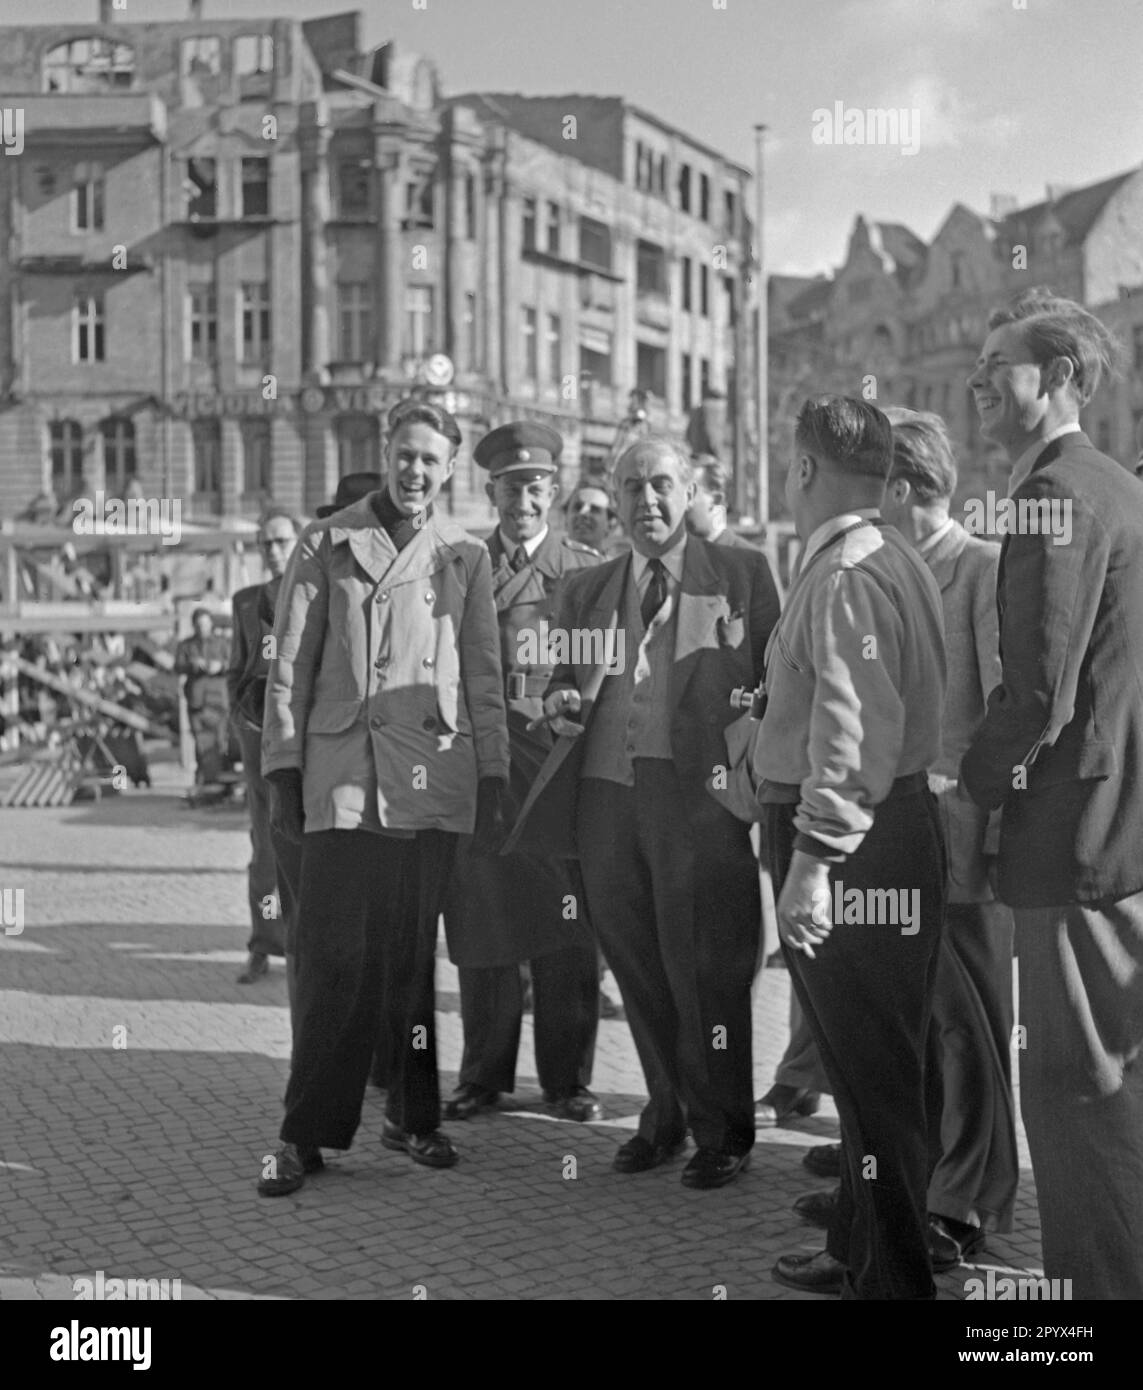 Foto des rauchenden Bürgermeisters von West-Berlin, Ernst Reuter (1948-1953) vor dem Rathaus Schoeneberg. Das Foto wurde anlässlich der Installation der Freiheitsglocke im Turm seiner offiziellen Residenz am 21. Oktober 1950 aufgenommen. Die Glocke ertönte zum ersten Mal bei der Zeremonie am Tag der Vereinten Nationen (UNO) am 24. Oktober. Stockfoto